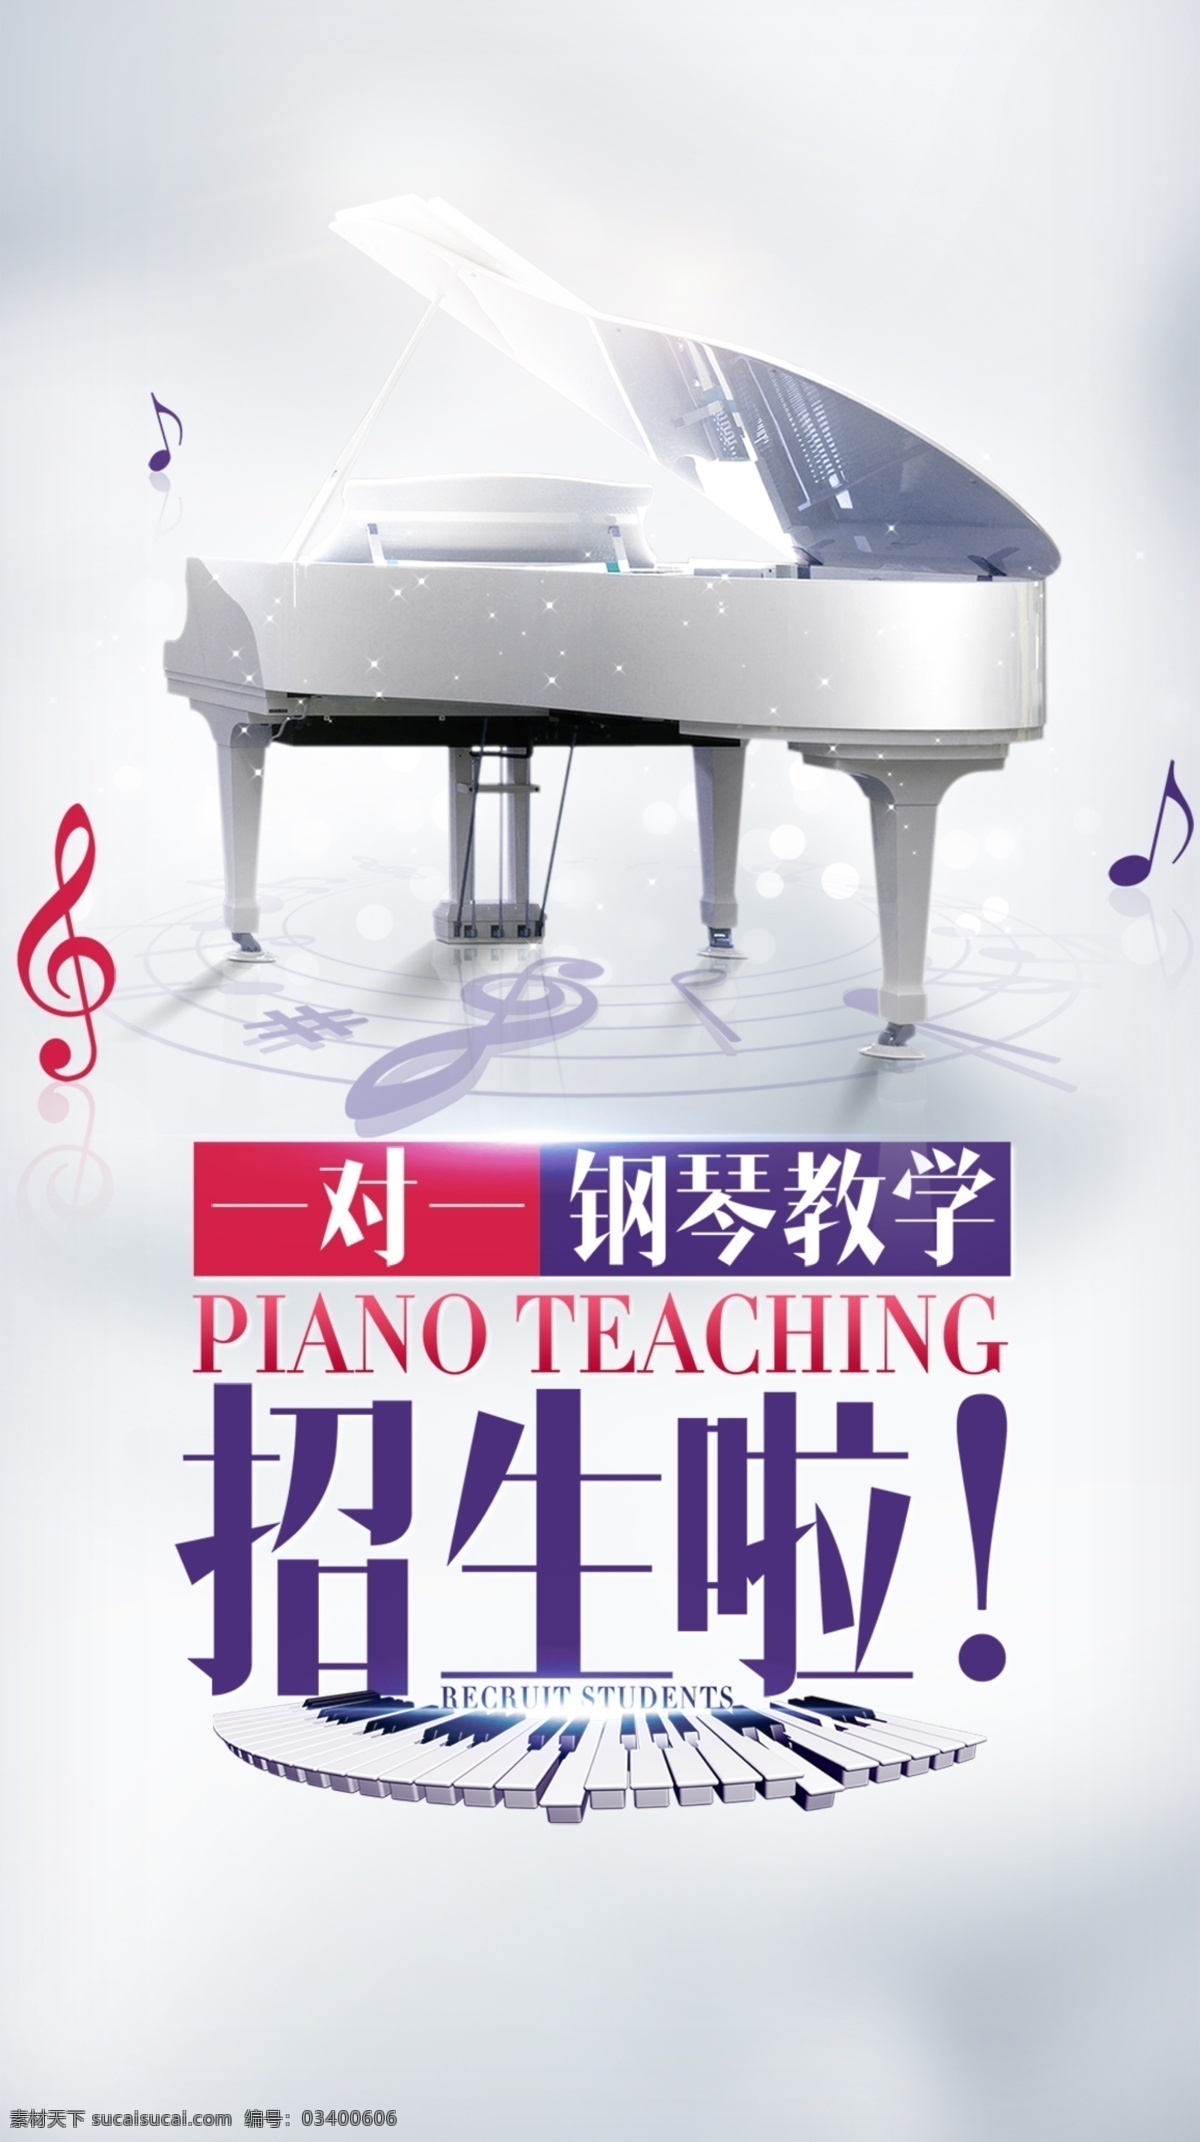 钢琴招生海报 钢琴 钢琴海报 钢琴招生 招生海报 招生展板 海报